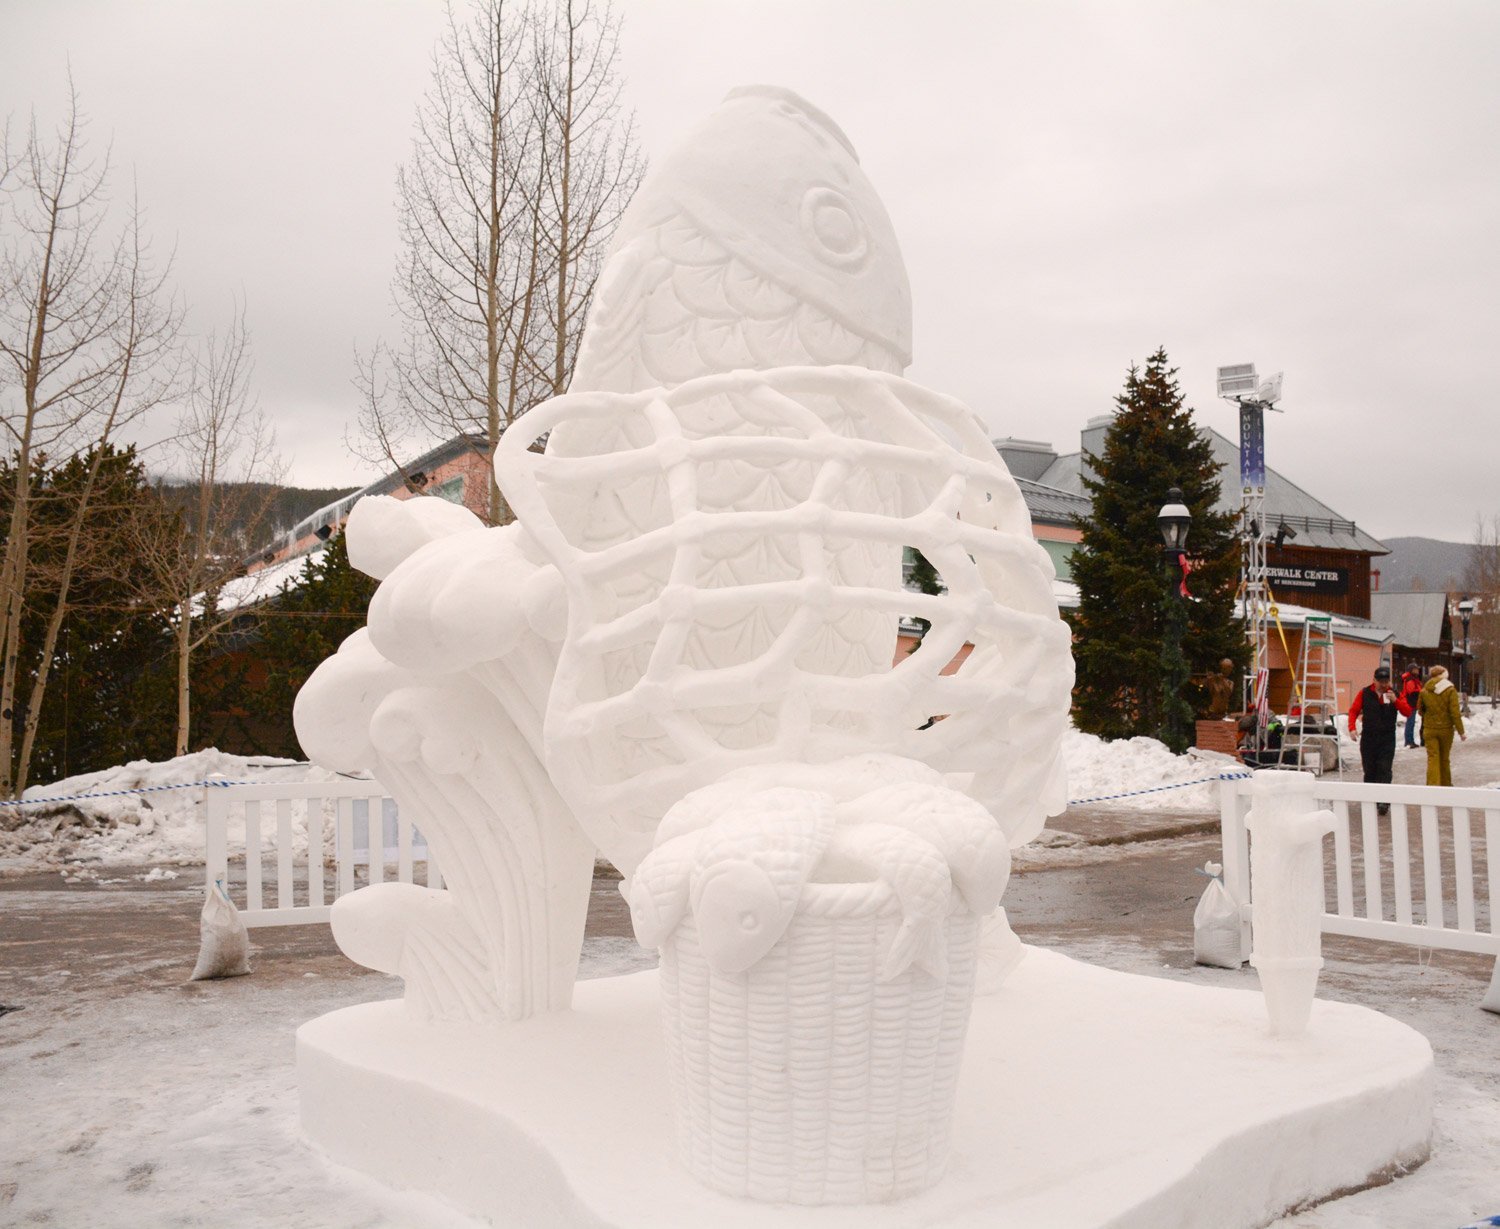 Breckenridge International Snow Sculpture Championships 2015